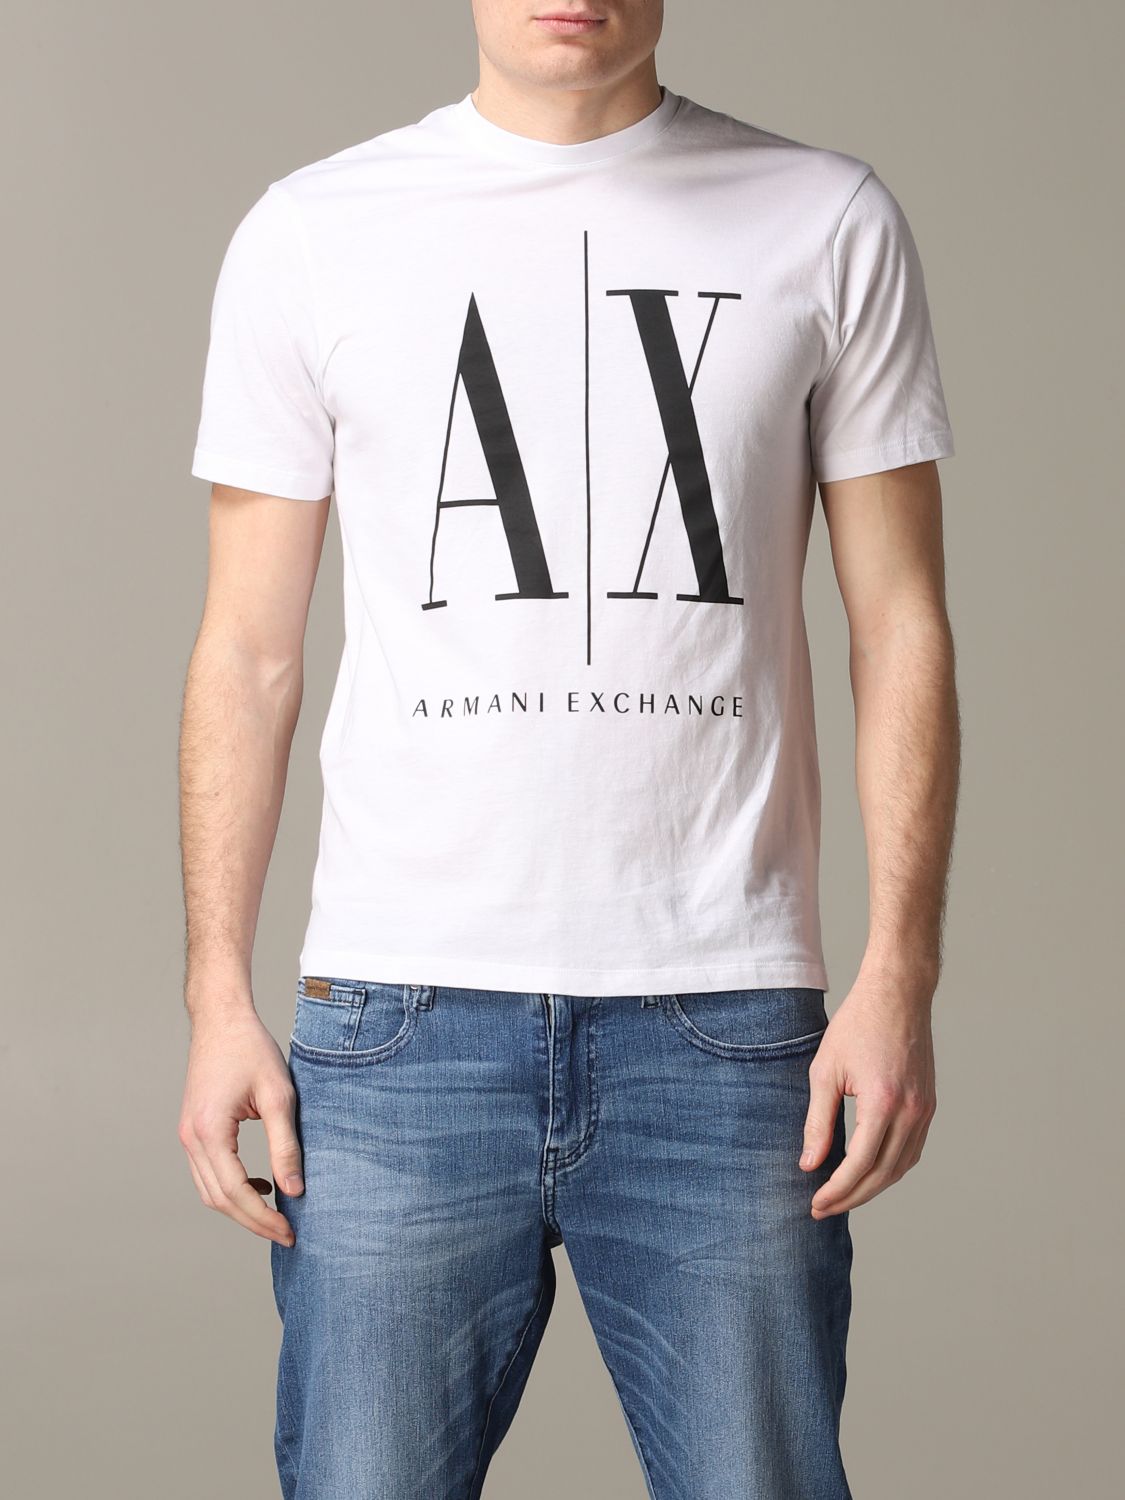 armani exchange t shirt uk